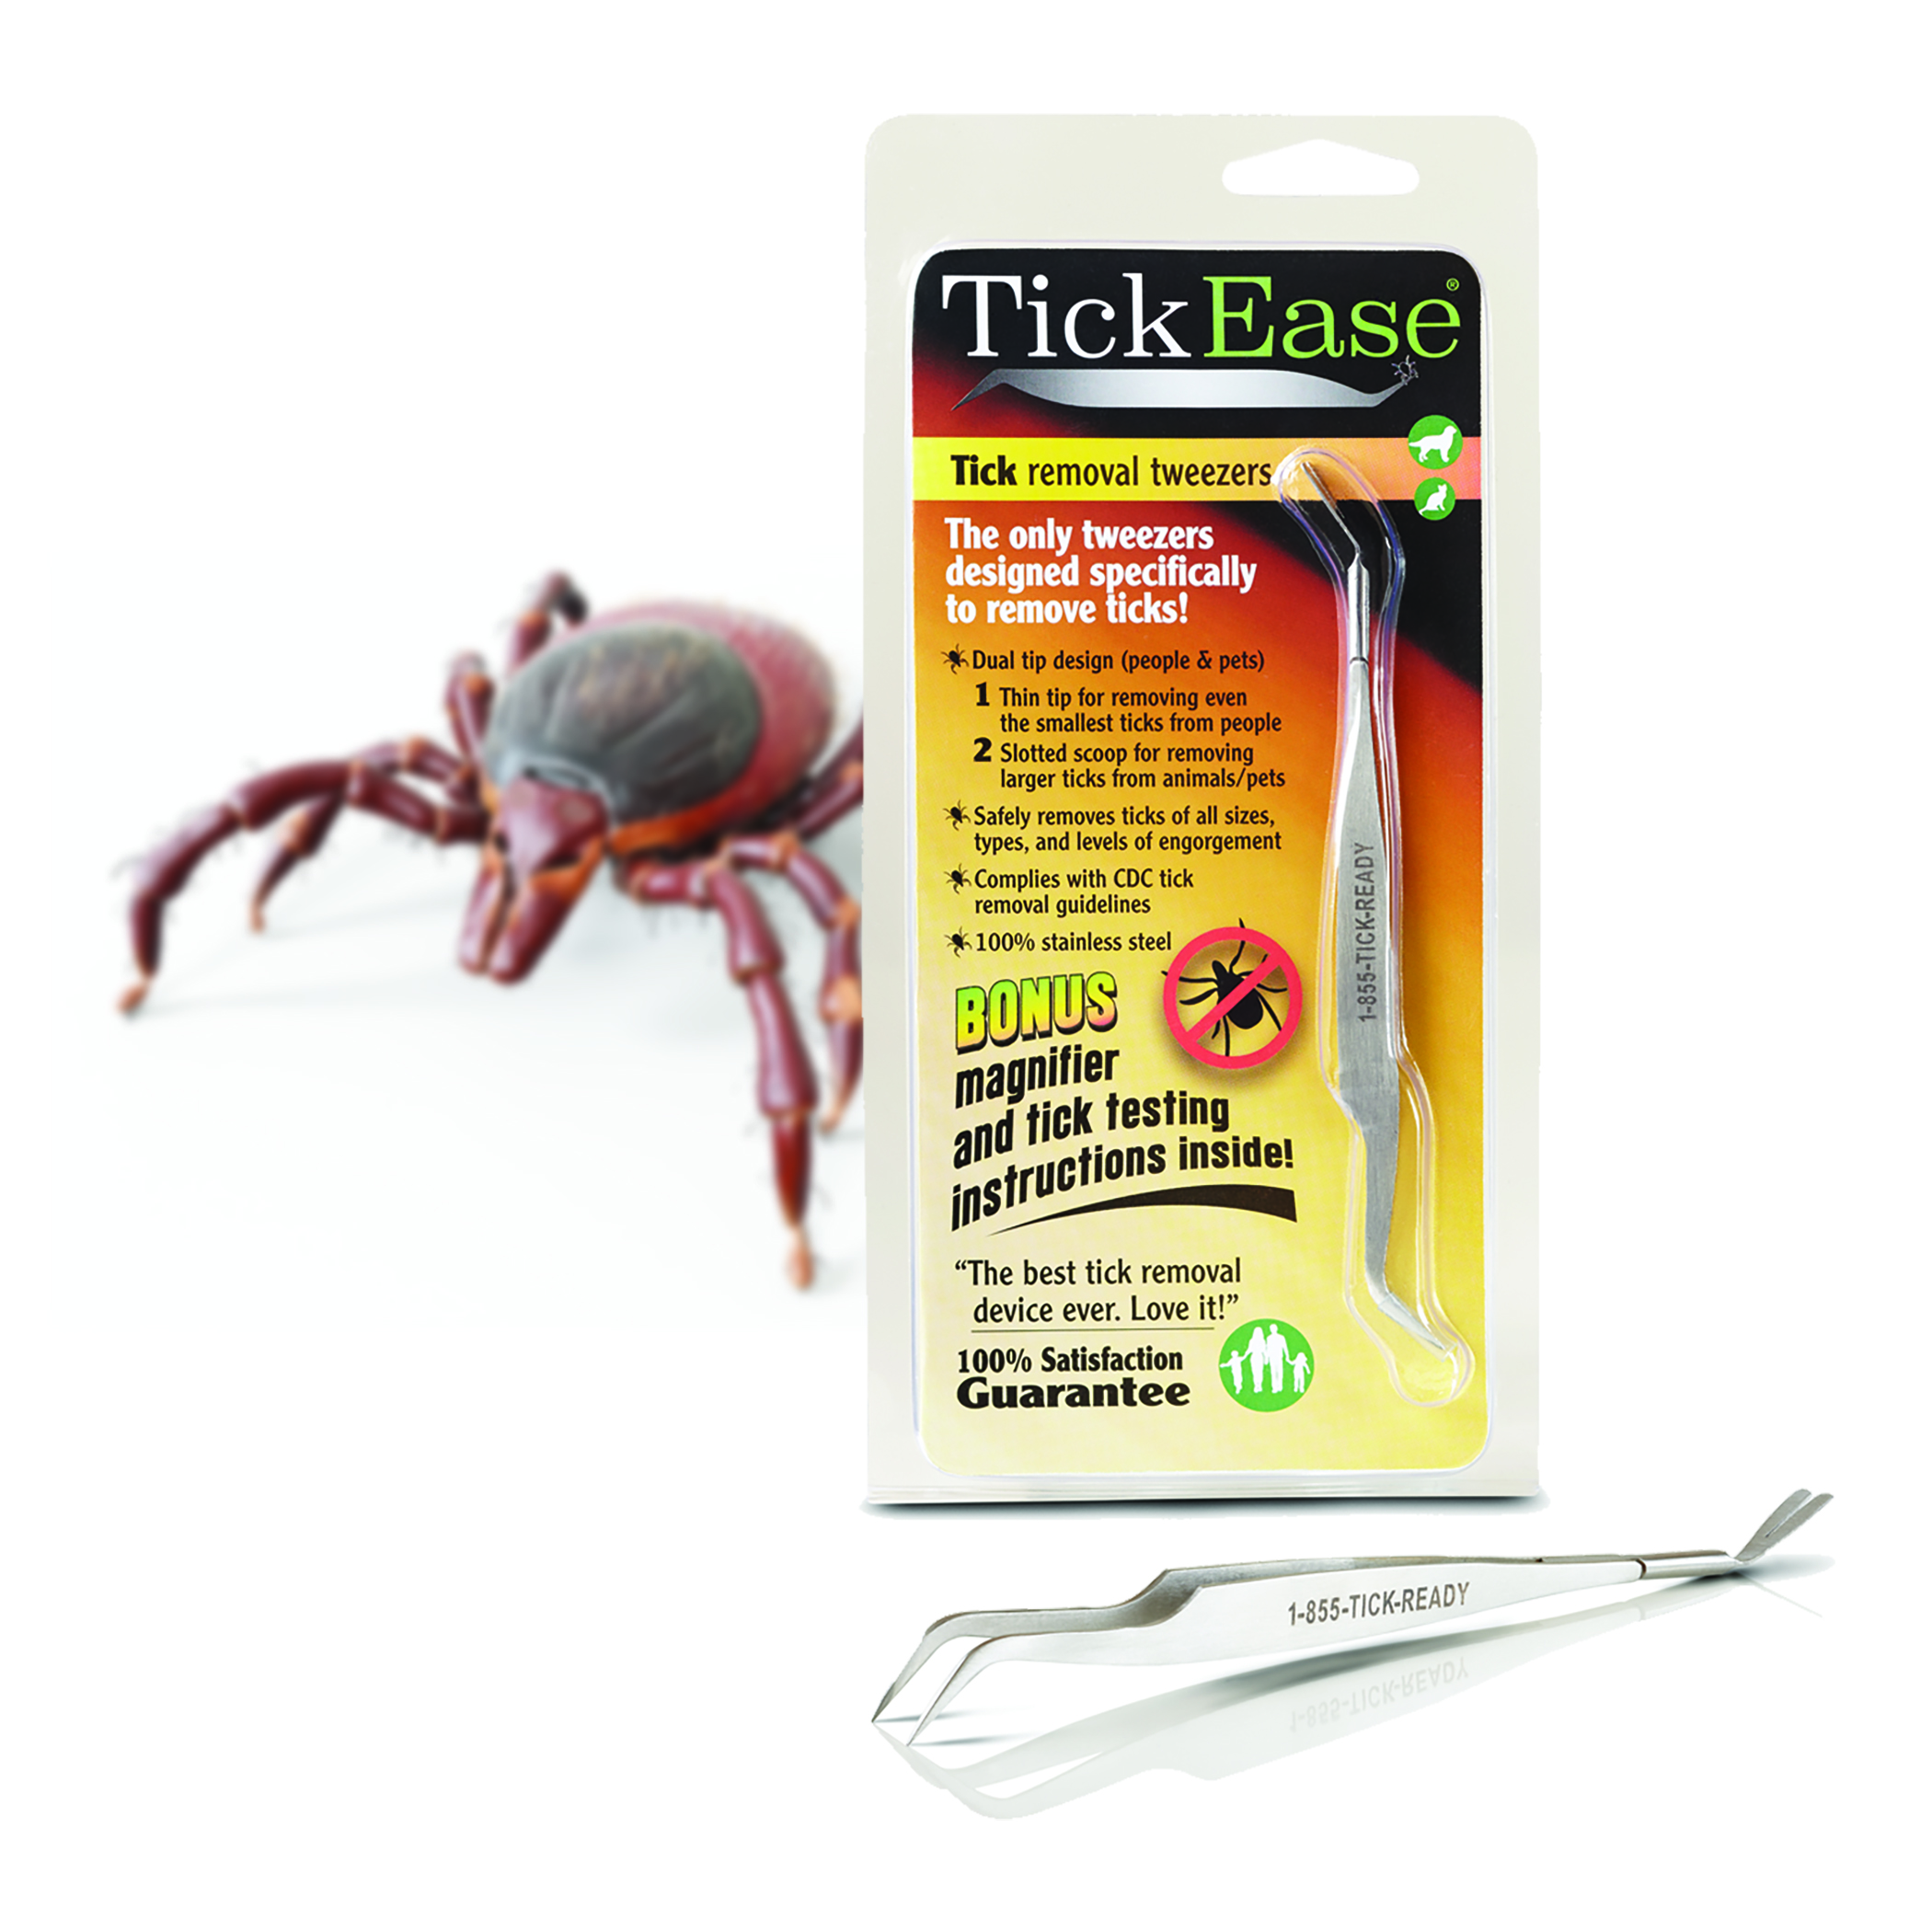 TickEase tick removal tweezers